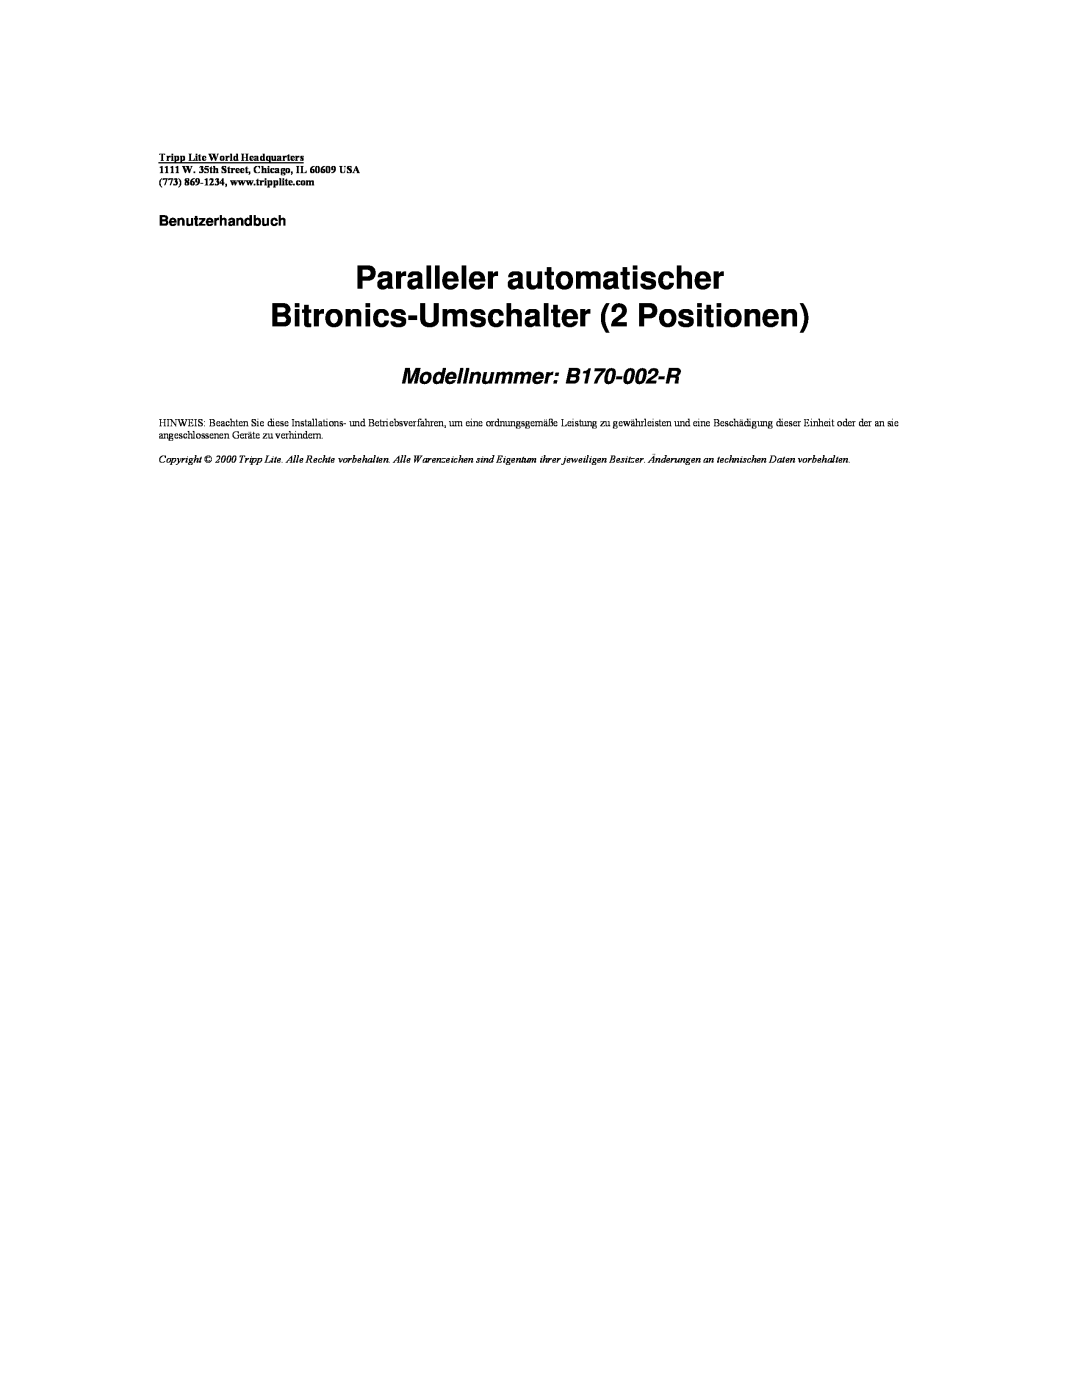 Tripp Lite Paralleler automatischer Bitronics-Umschalter 2 Positionen, Modellnummer B170-002-R, Benutzerhandbuch 